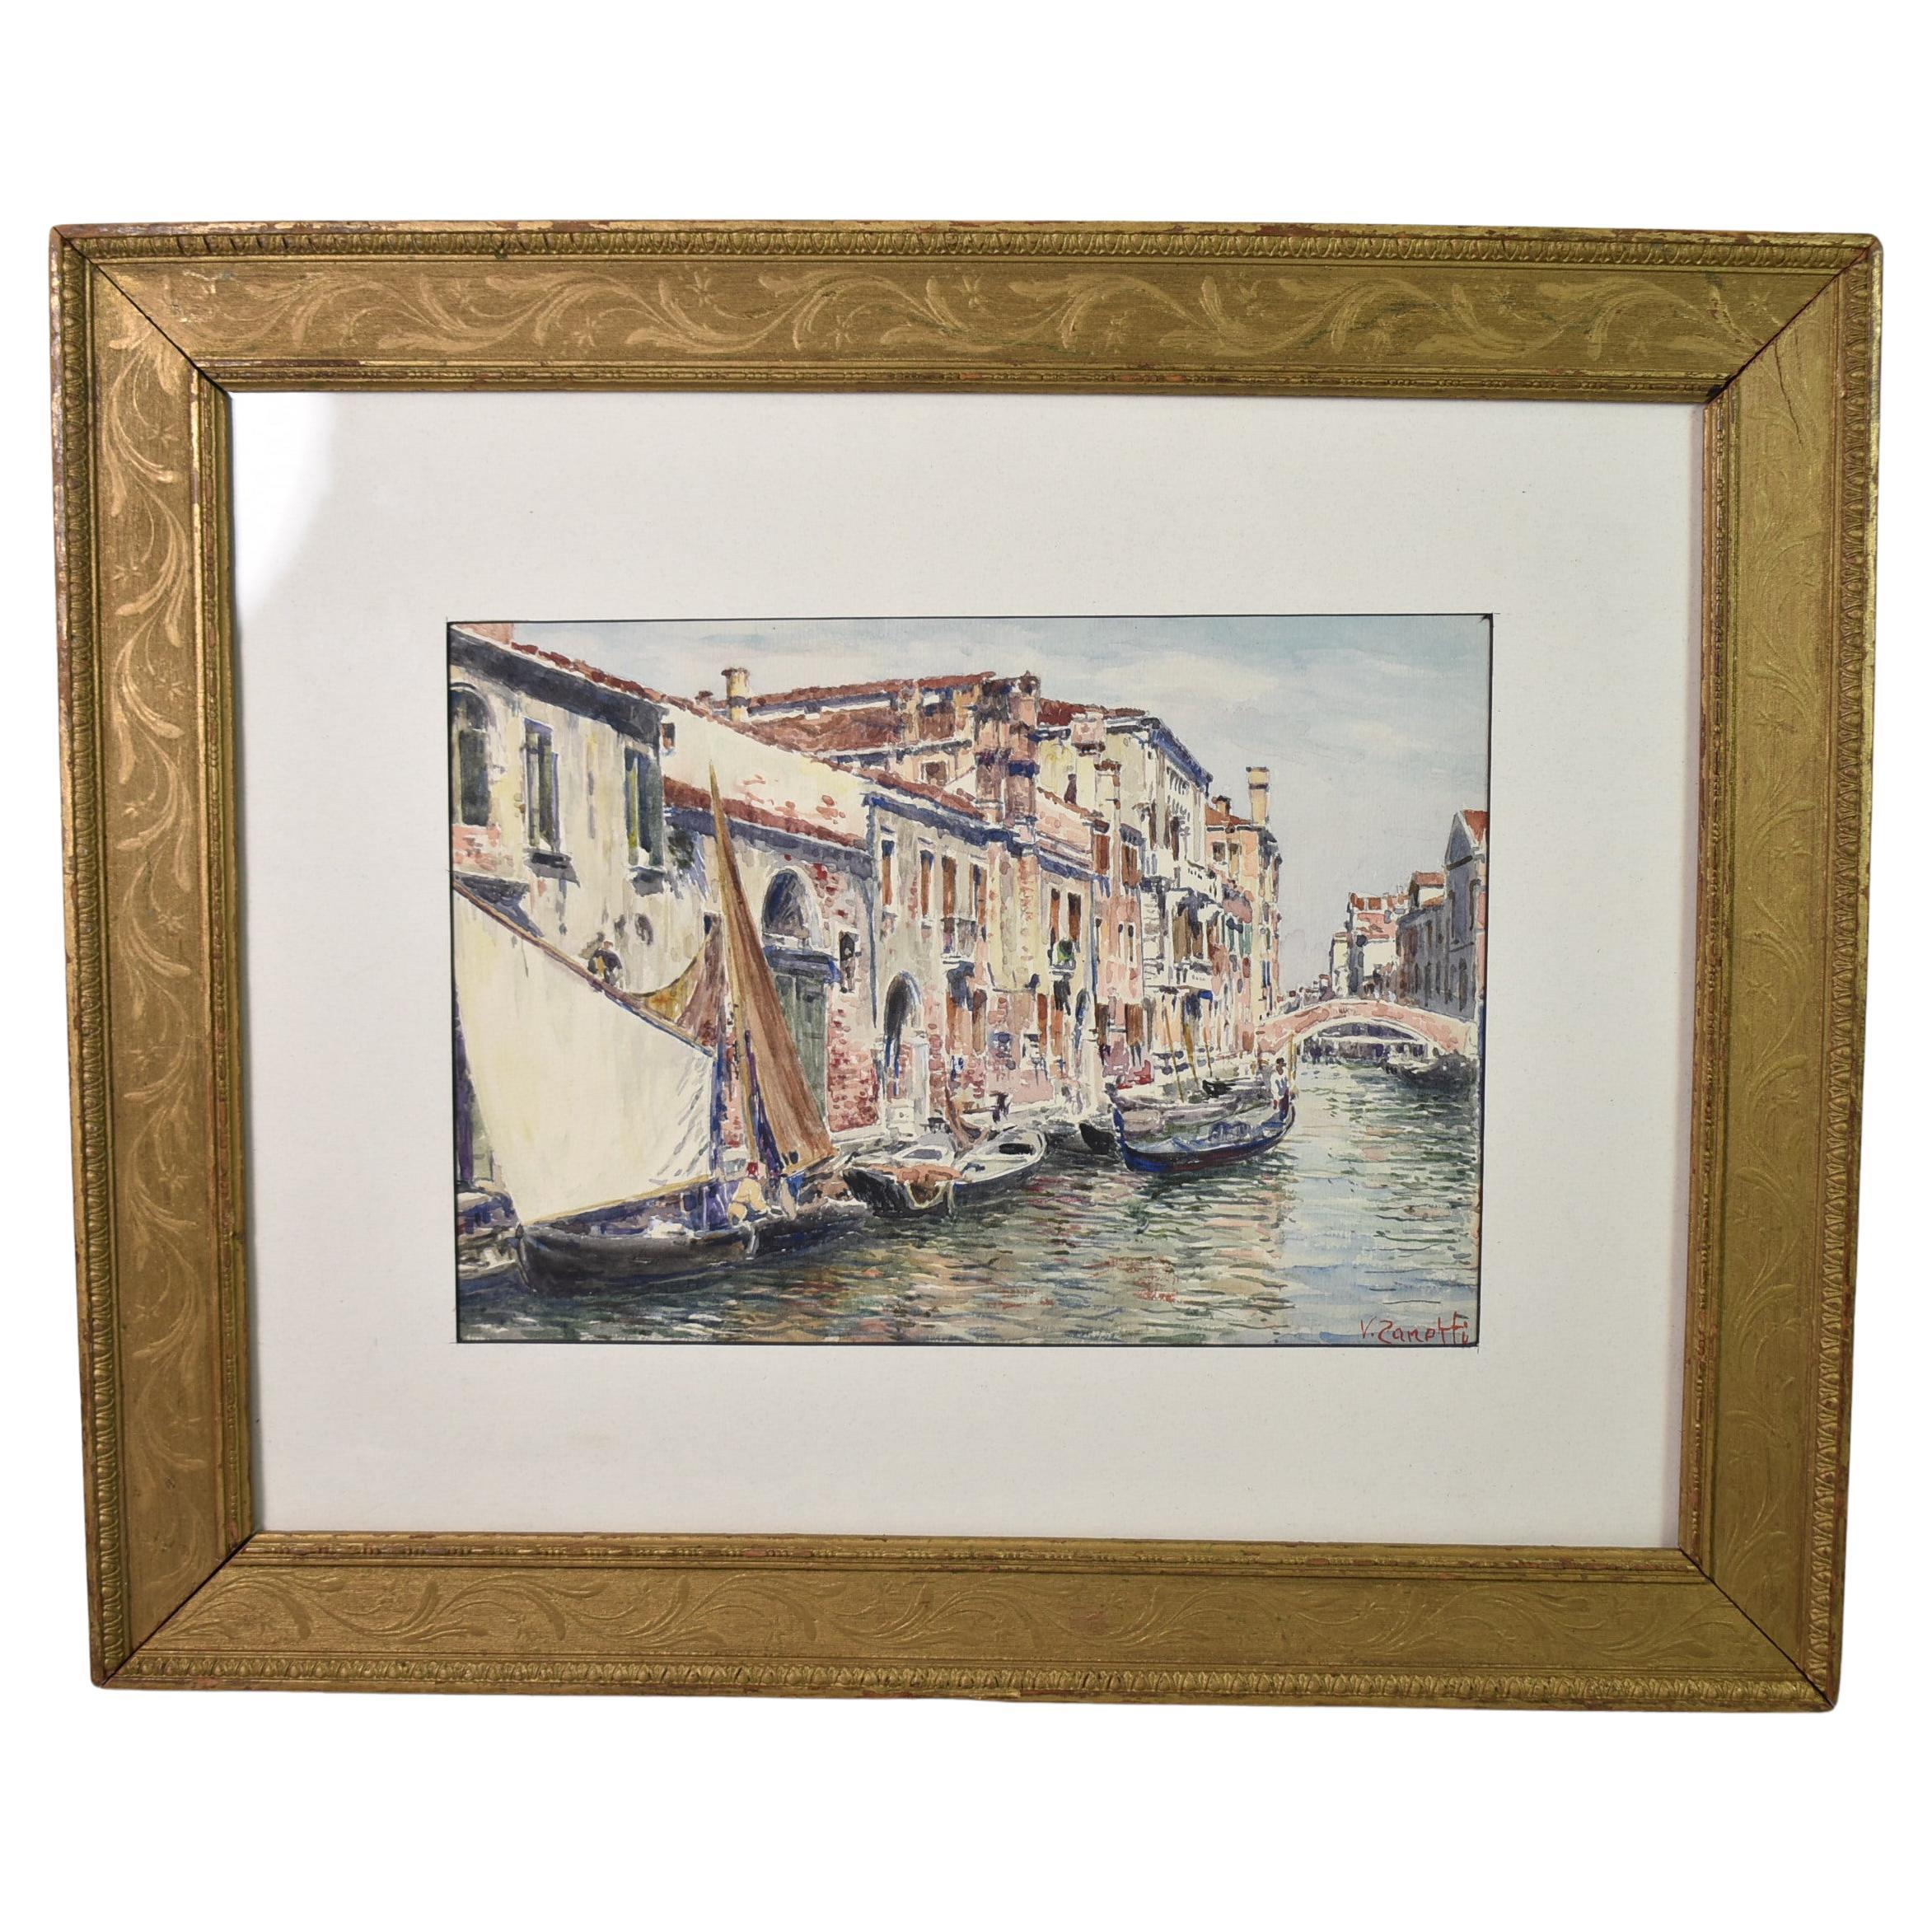 Vettore Zanetti aquarelle - Scène du canal de Venise signée